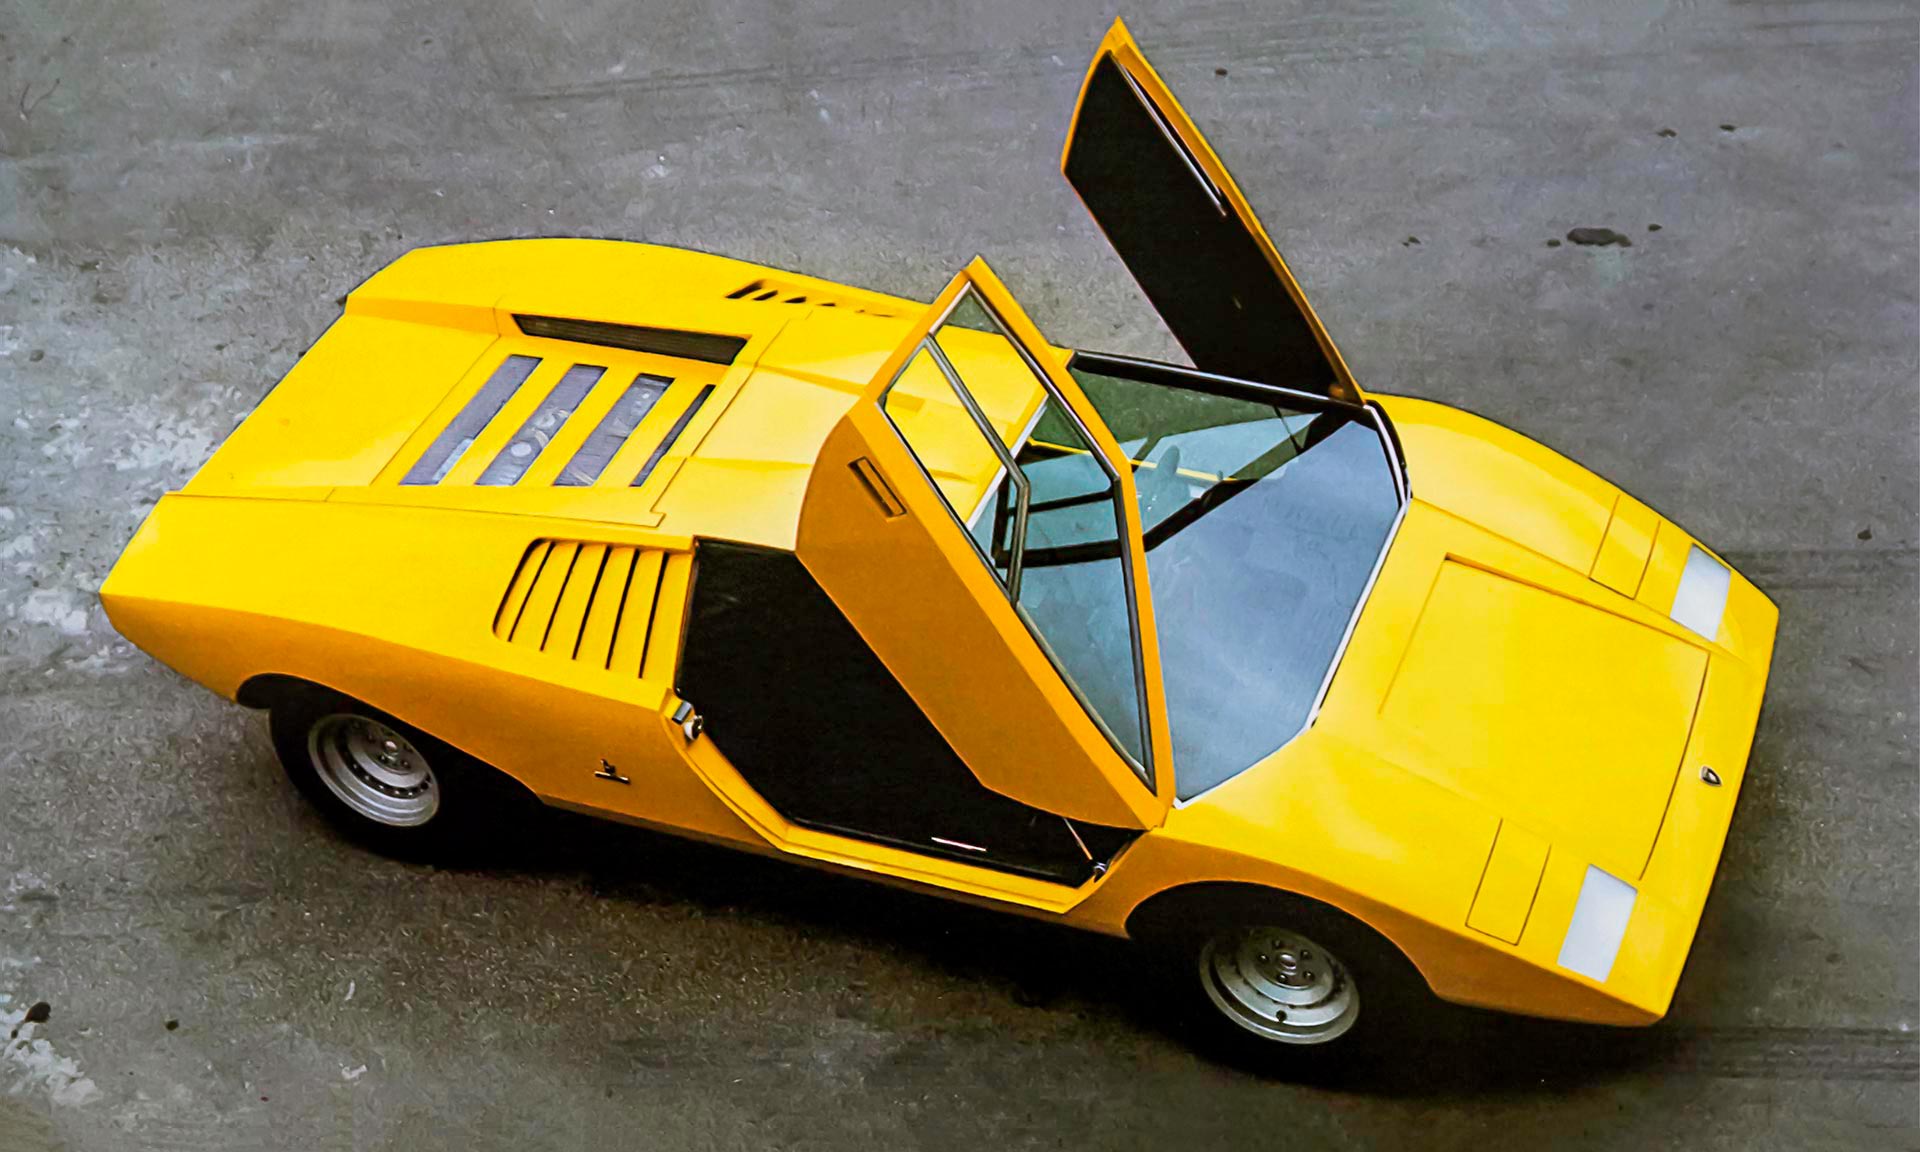 Přísně hranaté Lamborghini Countach LP 500 slaví velké výročí 50 let